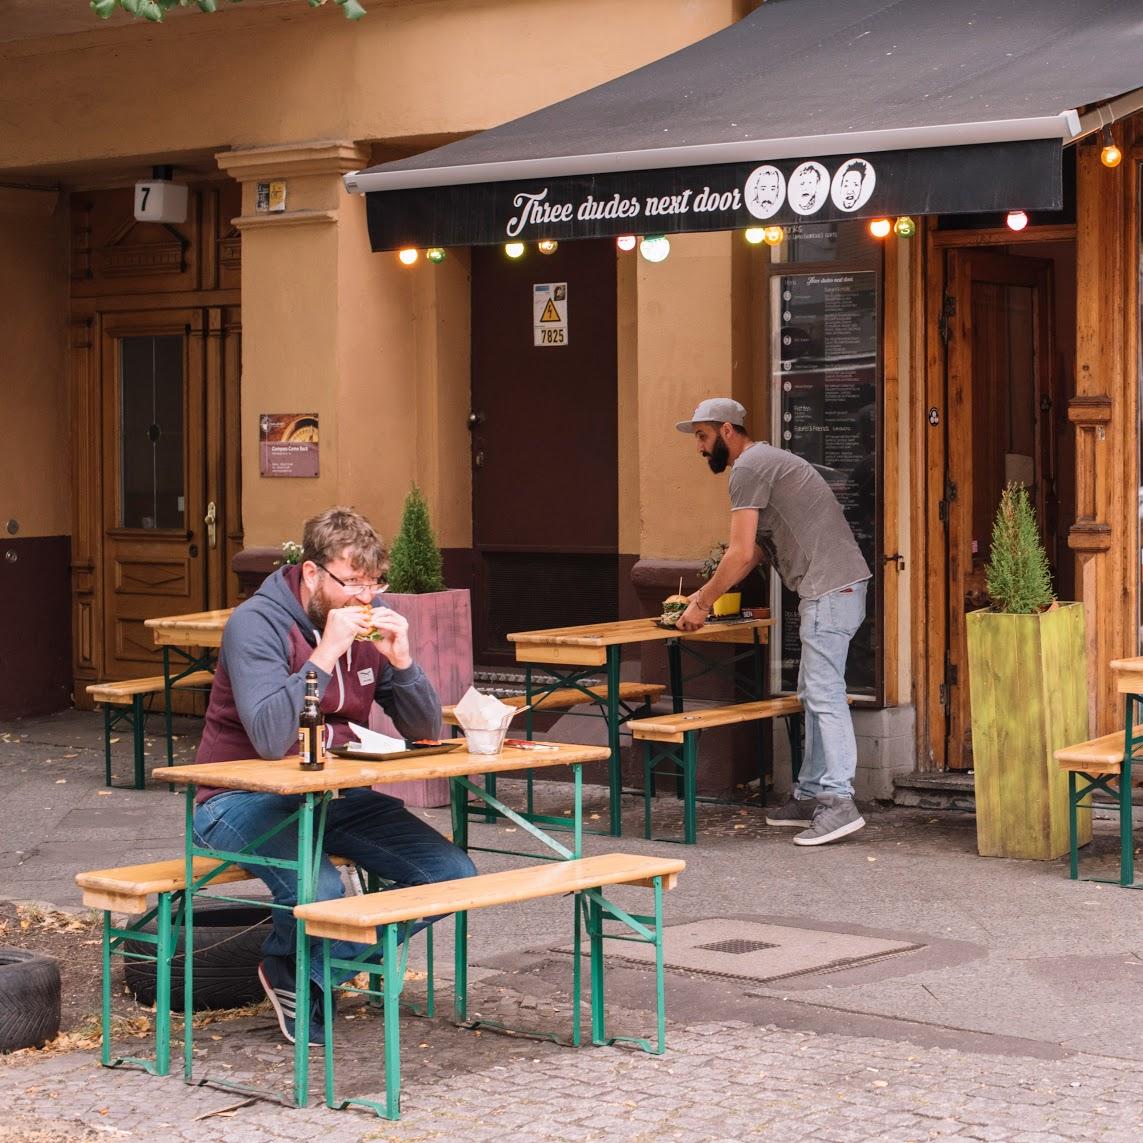 Restaurant "Three dudes next door" in Berlin